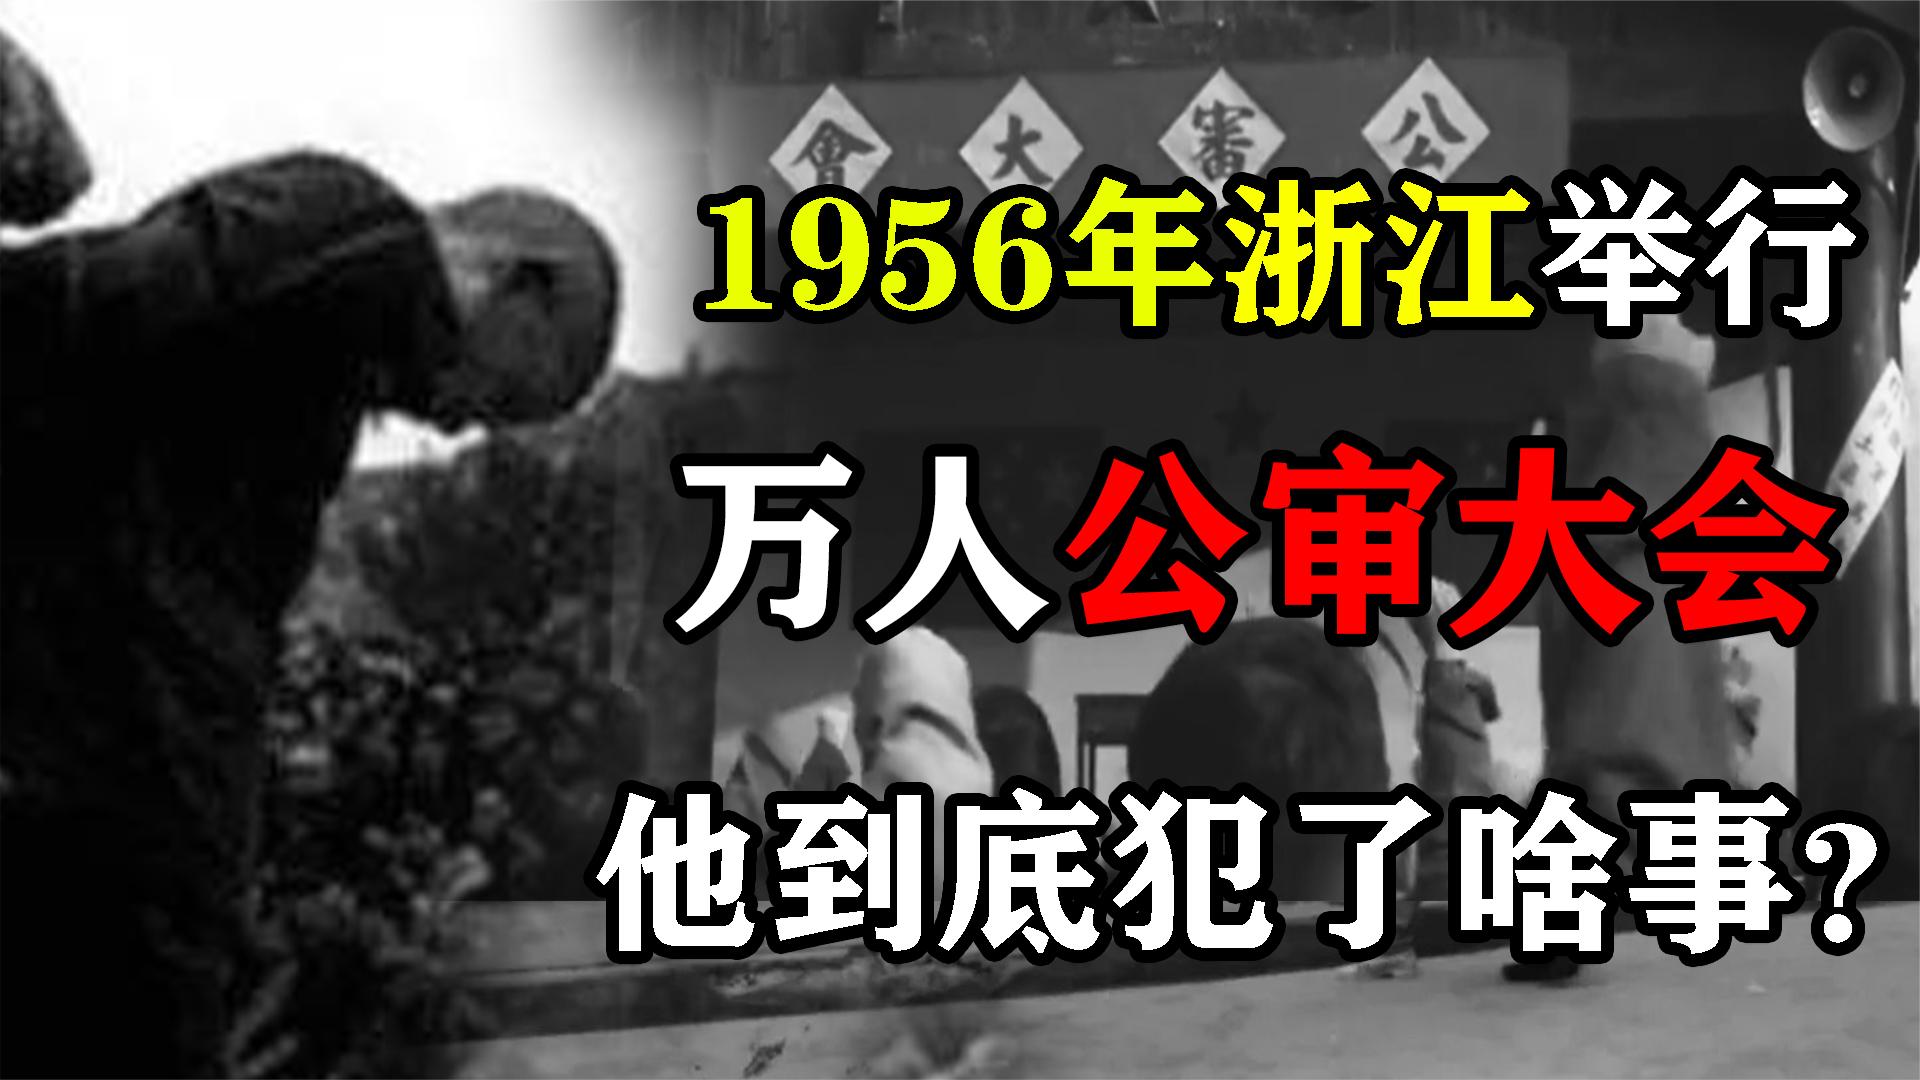 1956年浙江举行万人公审大会，审判一个木匠单银昌，他犯了什么事